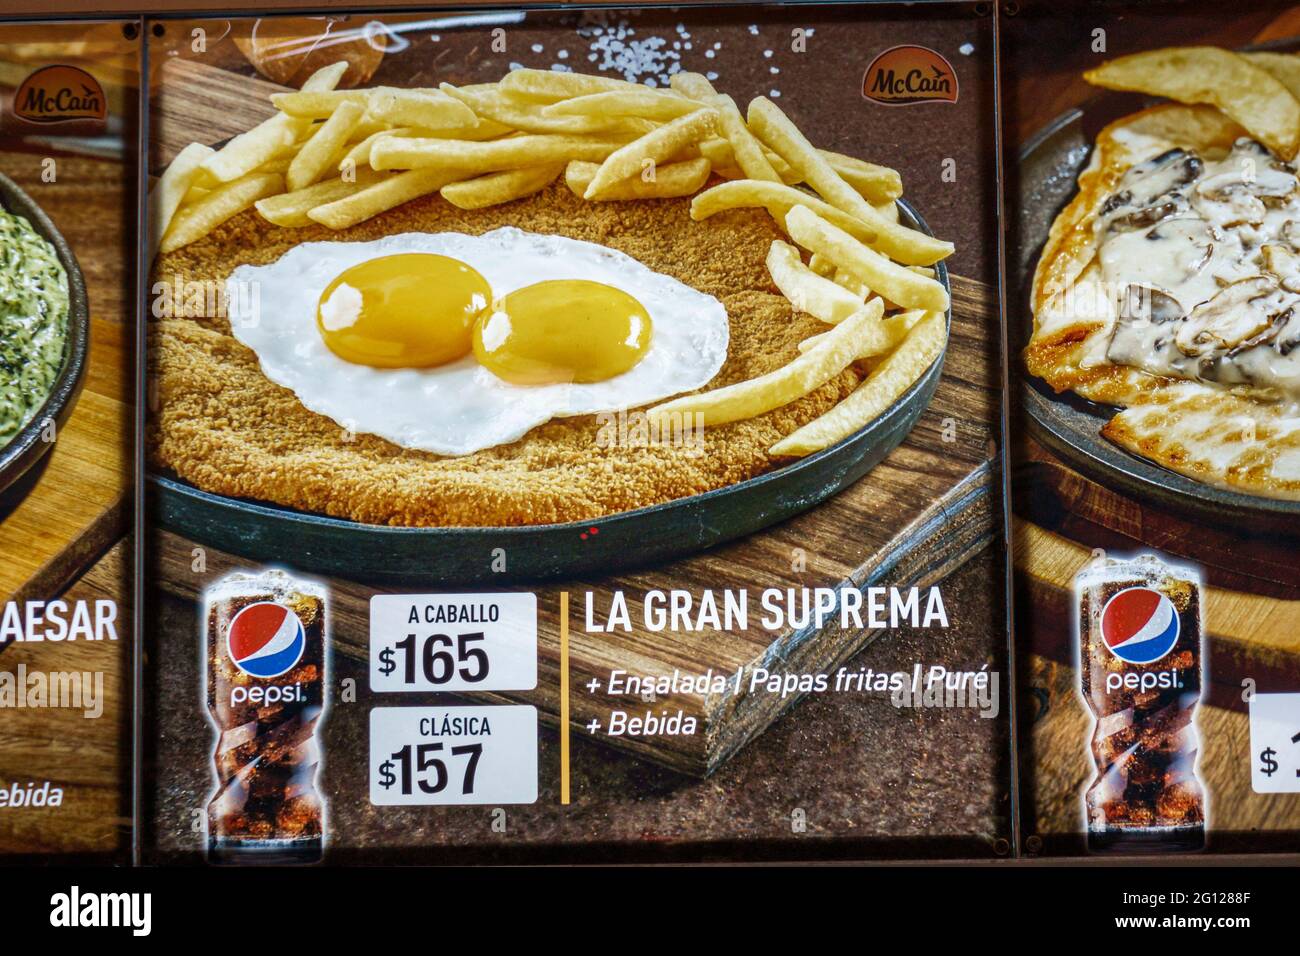 Argentine Buenos Aires restaurant photo menu cuisine typique Pepsi marketing espagnol langue frit oeufs frites Milanesa a Caballo poulet ven Banque D'Images